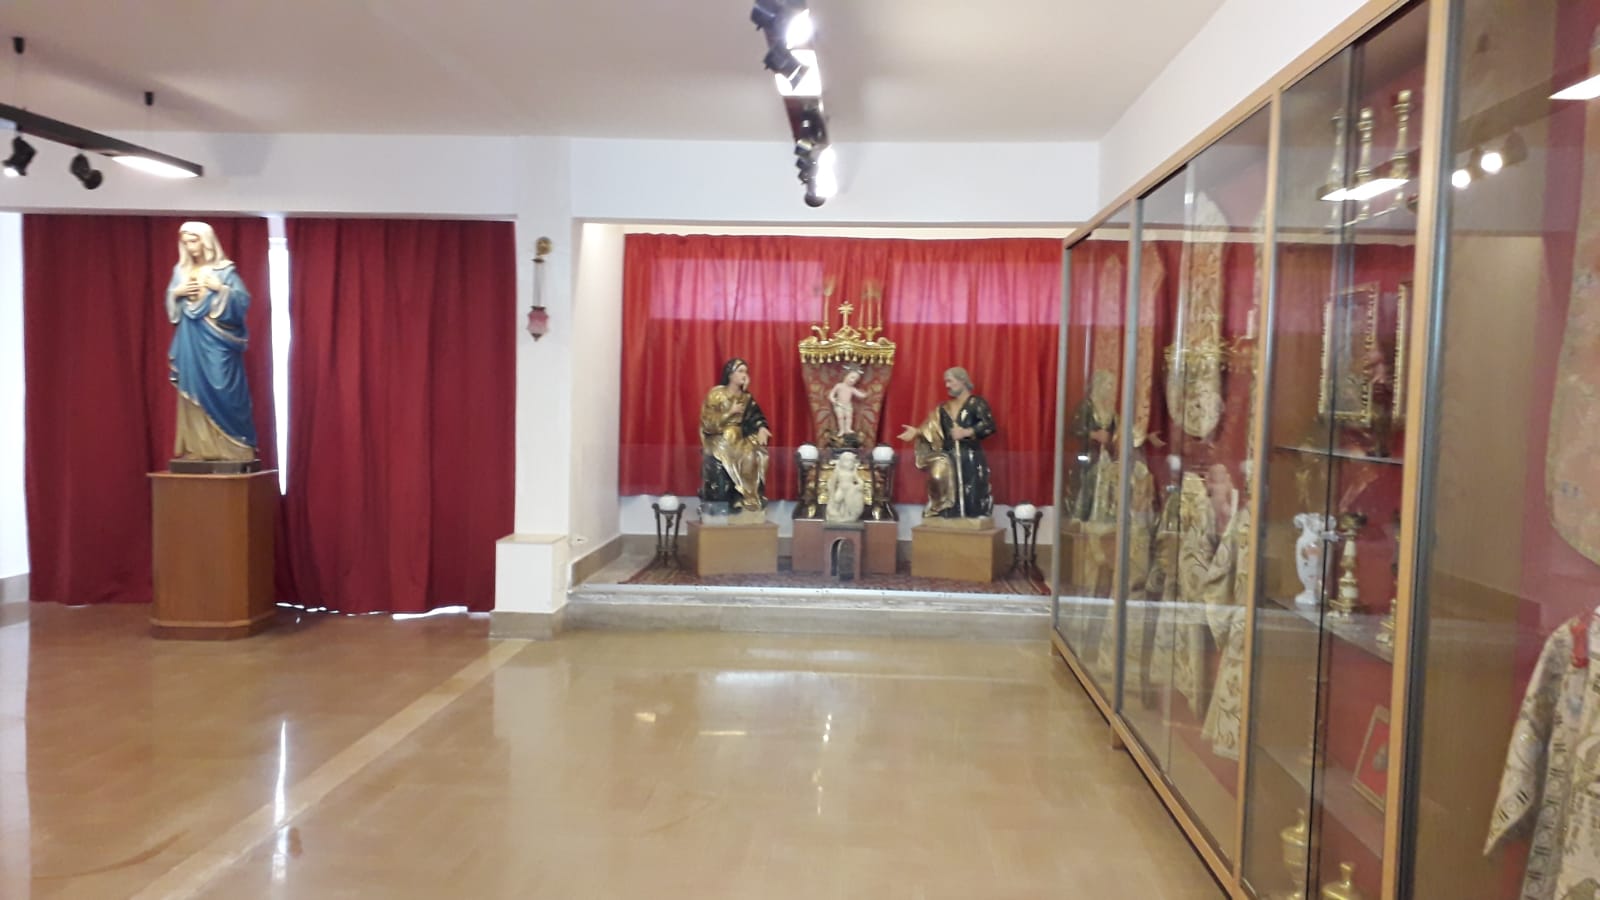 Riaperto a Siracusa il museo dei paramenti: si trova al Santuario